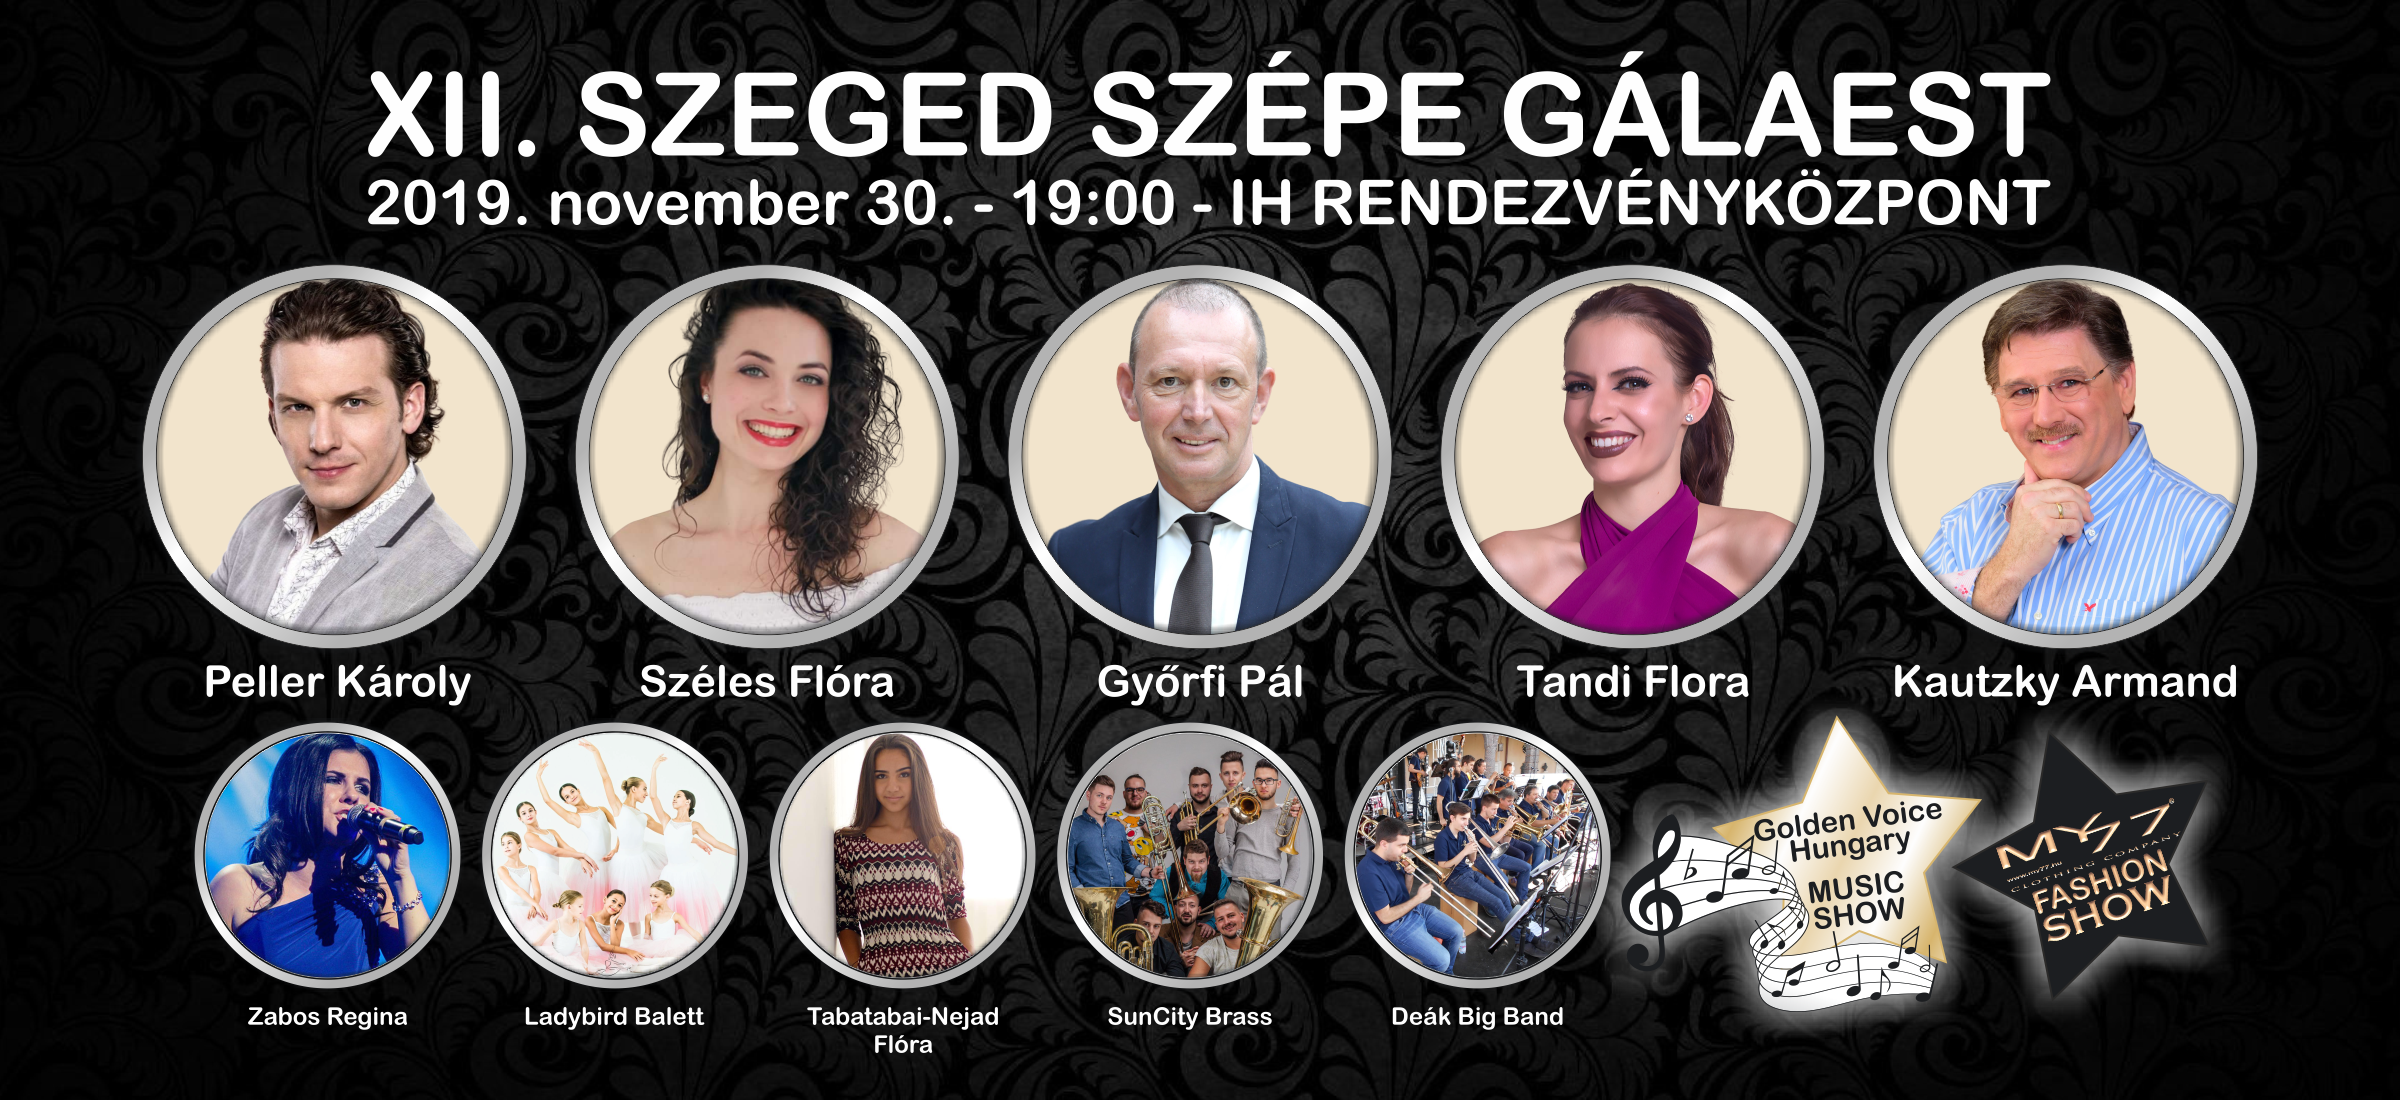 Szeged Szépe Gálaest 2019.png